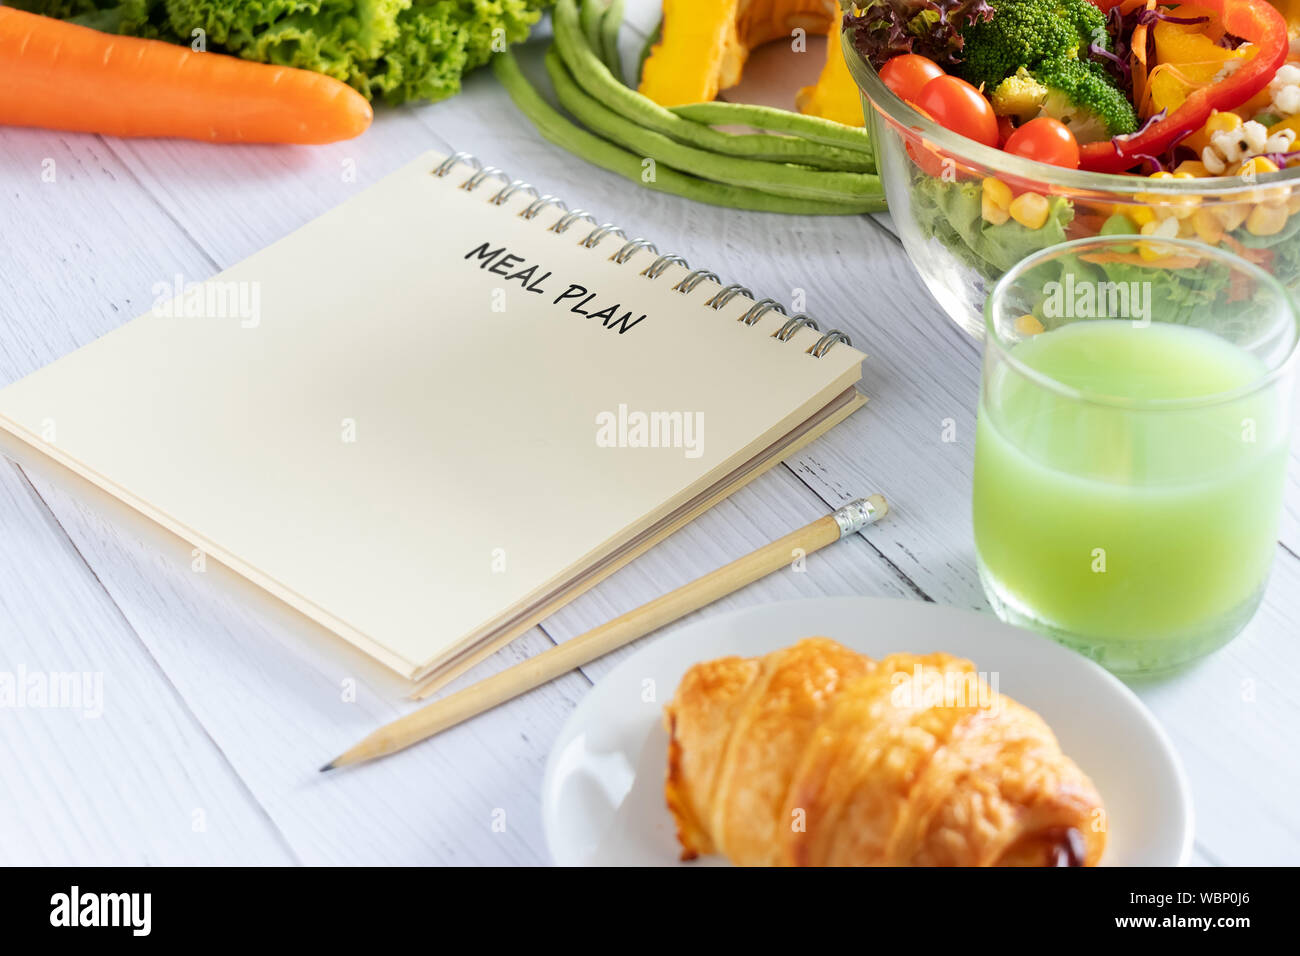 Le contrôle des calories, repas, régime alimentaire et perte de poids concept. repas écrit le planificateur d'ordinateur portable avec salade, jus de fruits, pain et légumes Banque D'Images